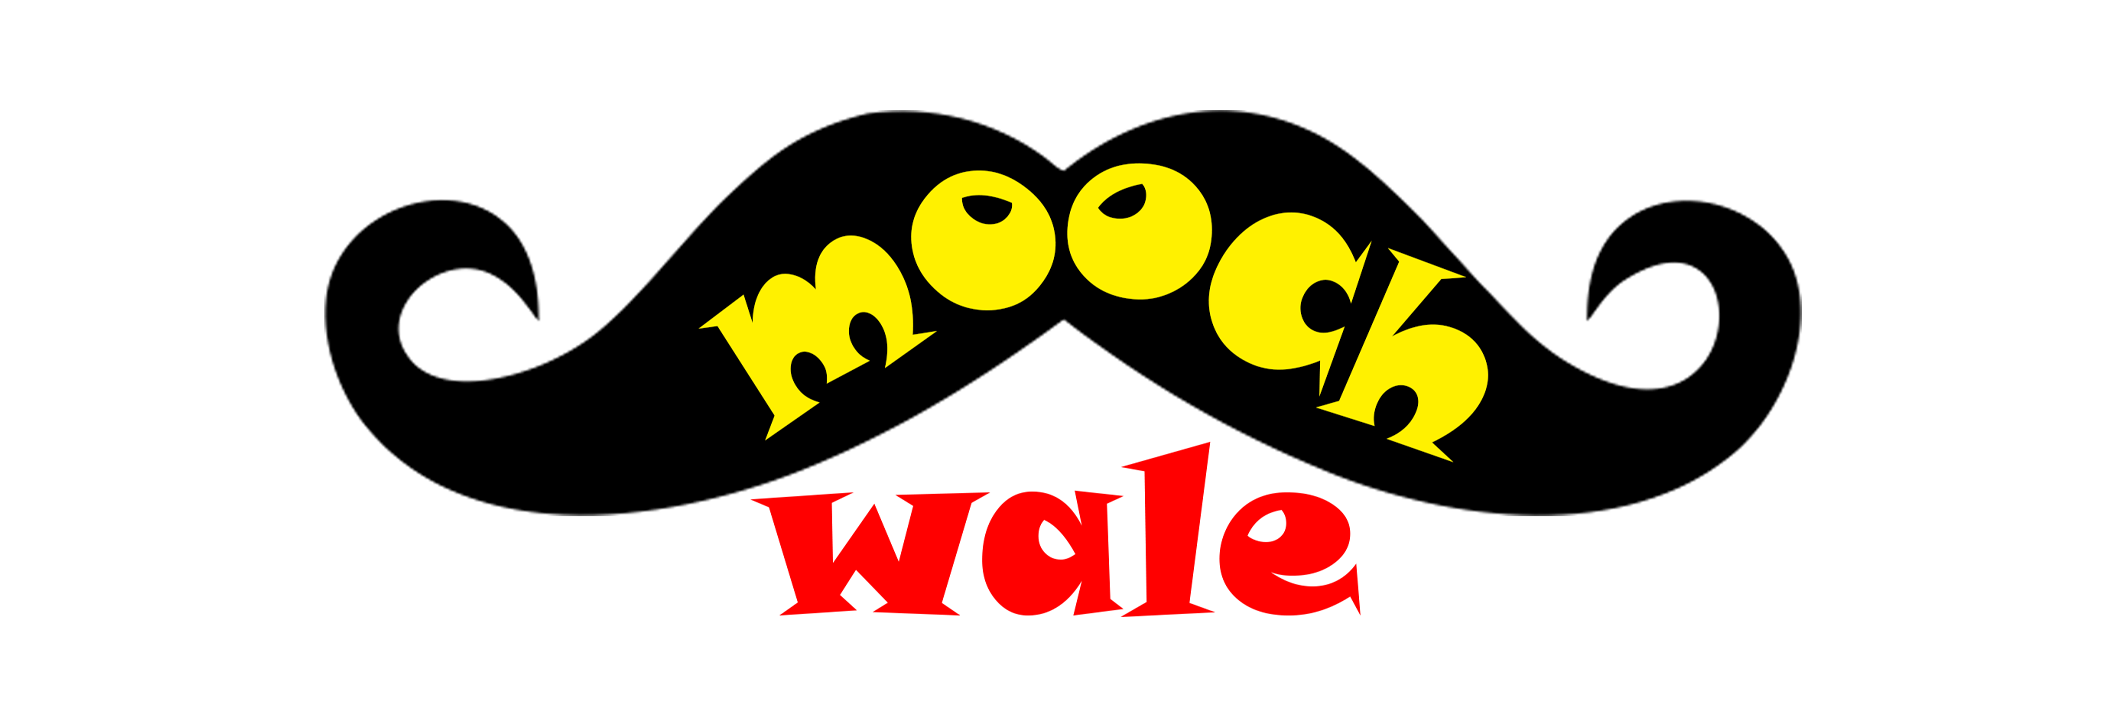 Moochwale